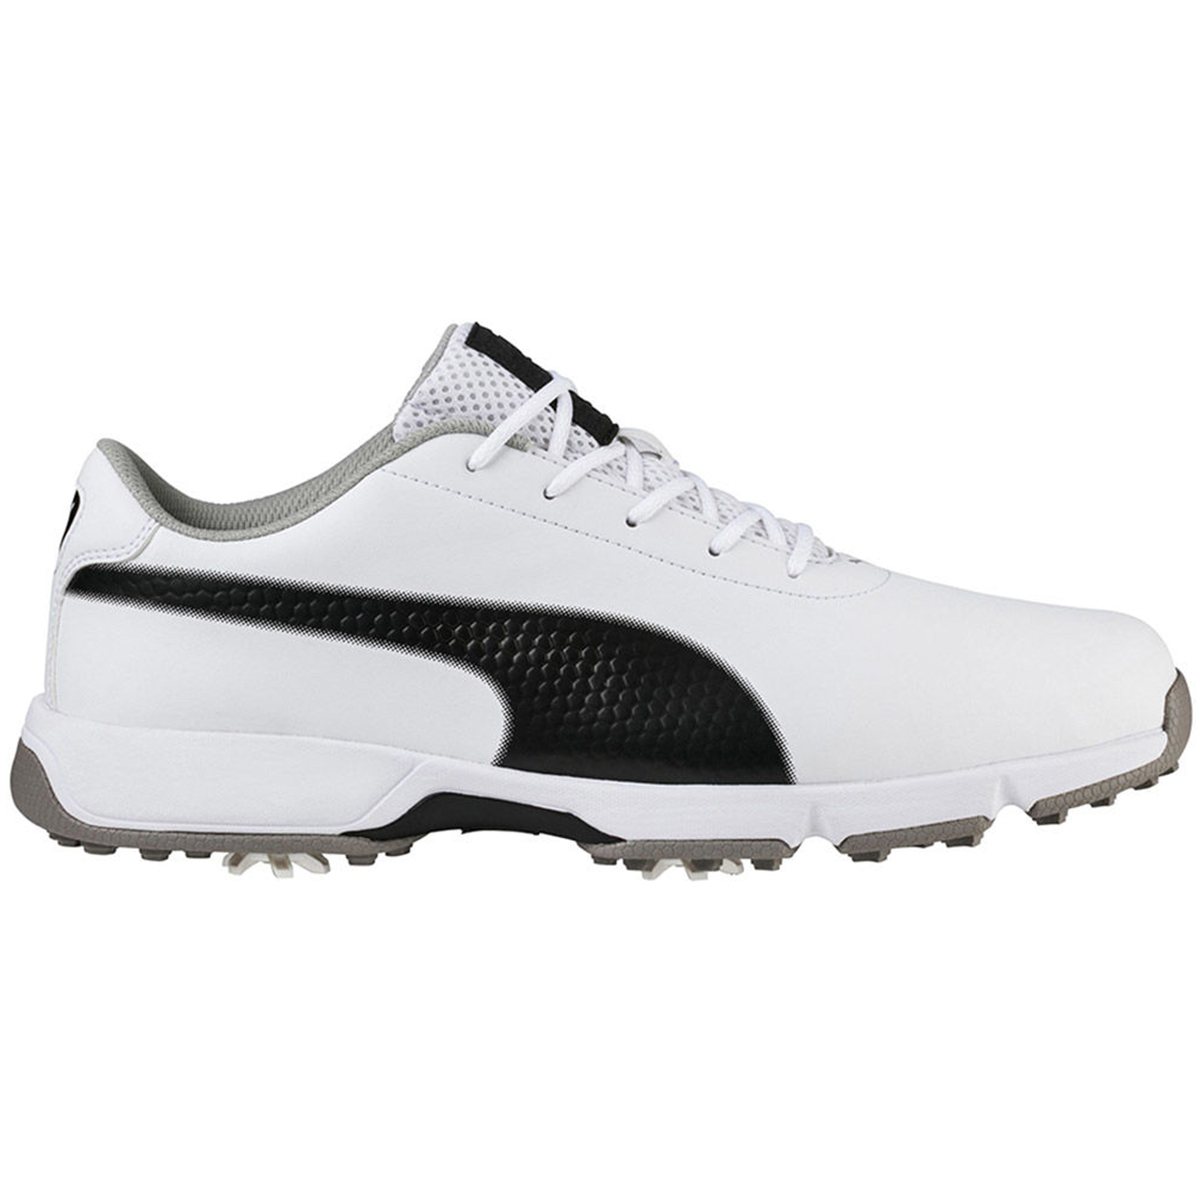 puma golf shoes for men